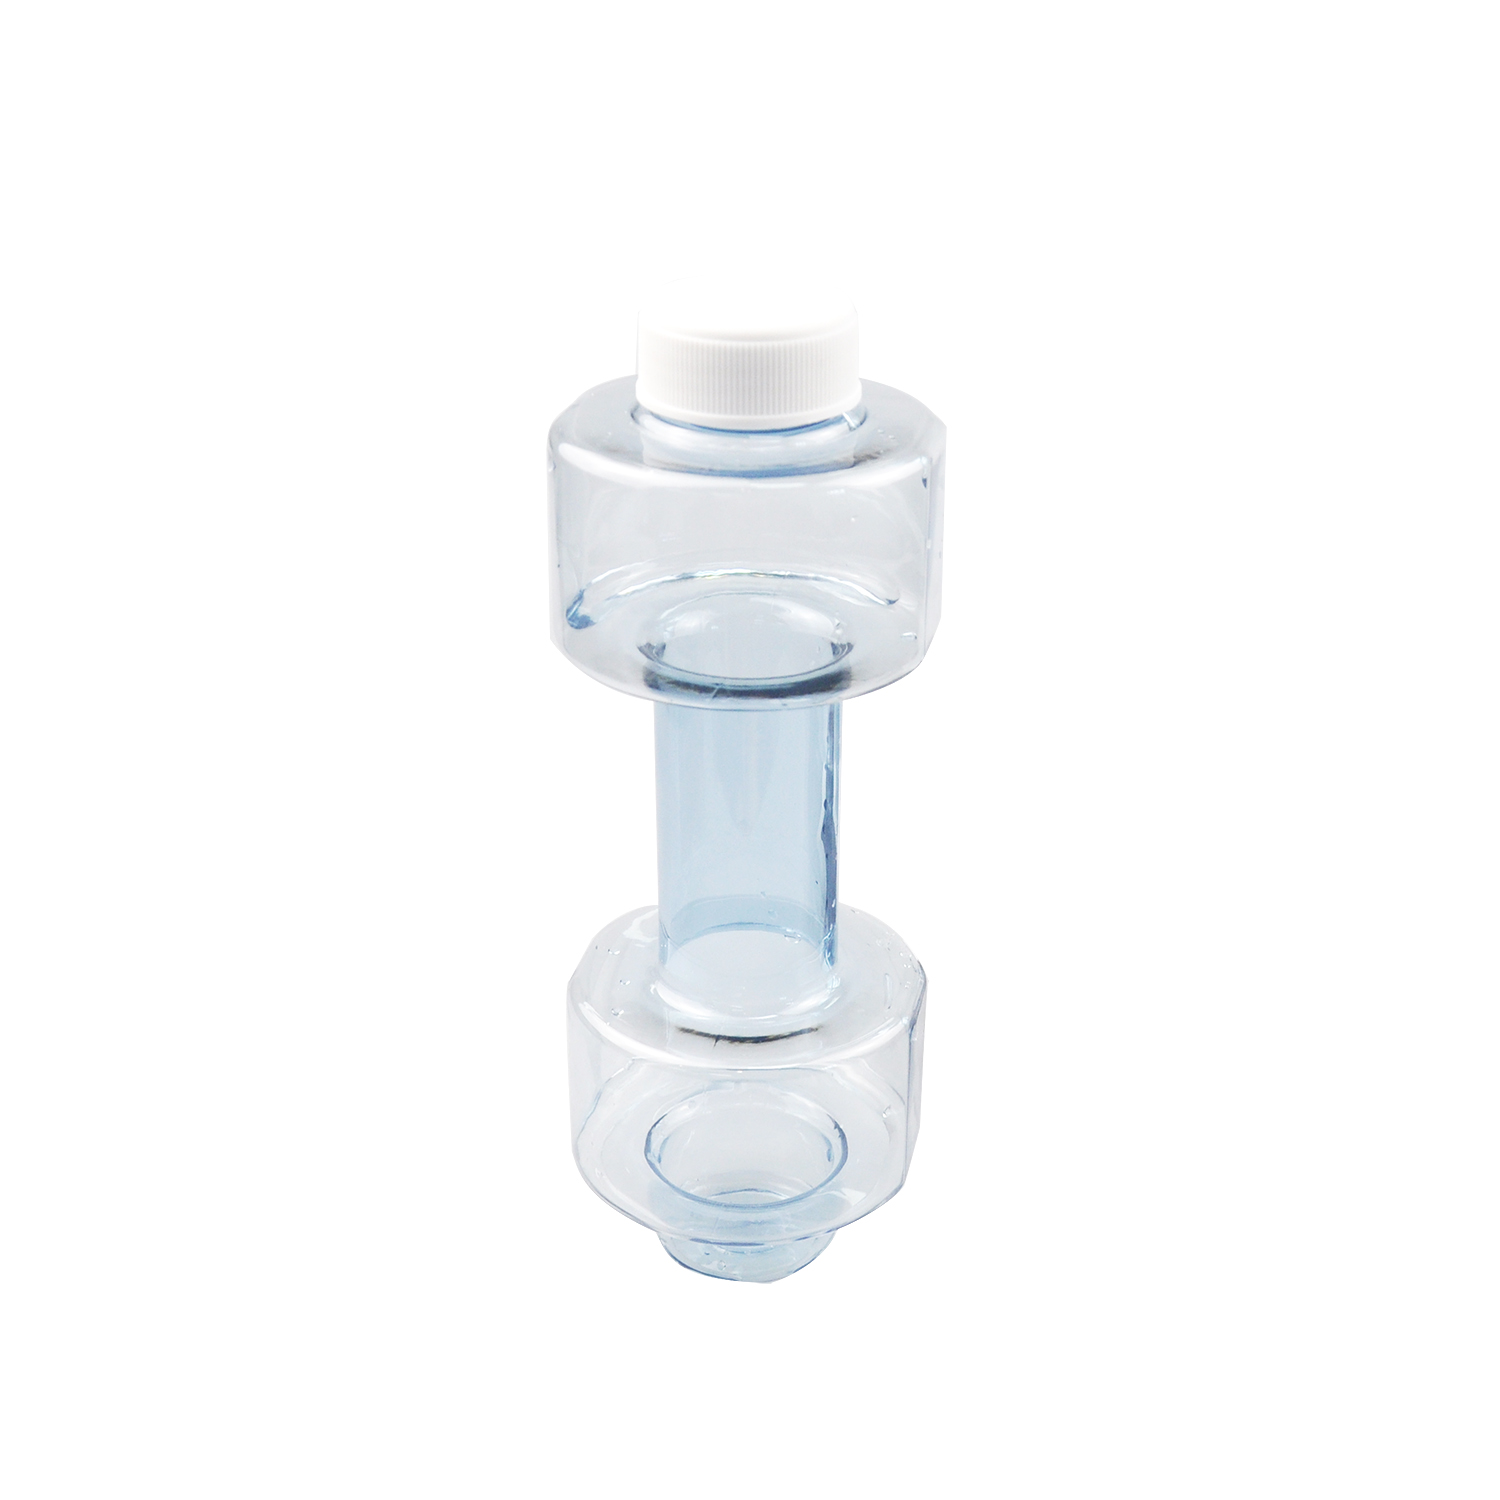 Plastic Shaker Bottle Fitness Exercise Dumbbell Water Bottle